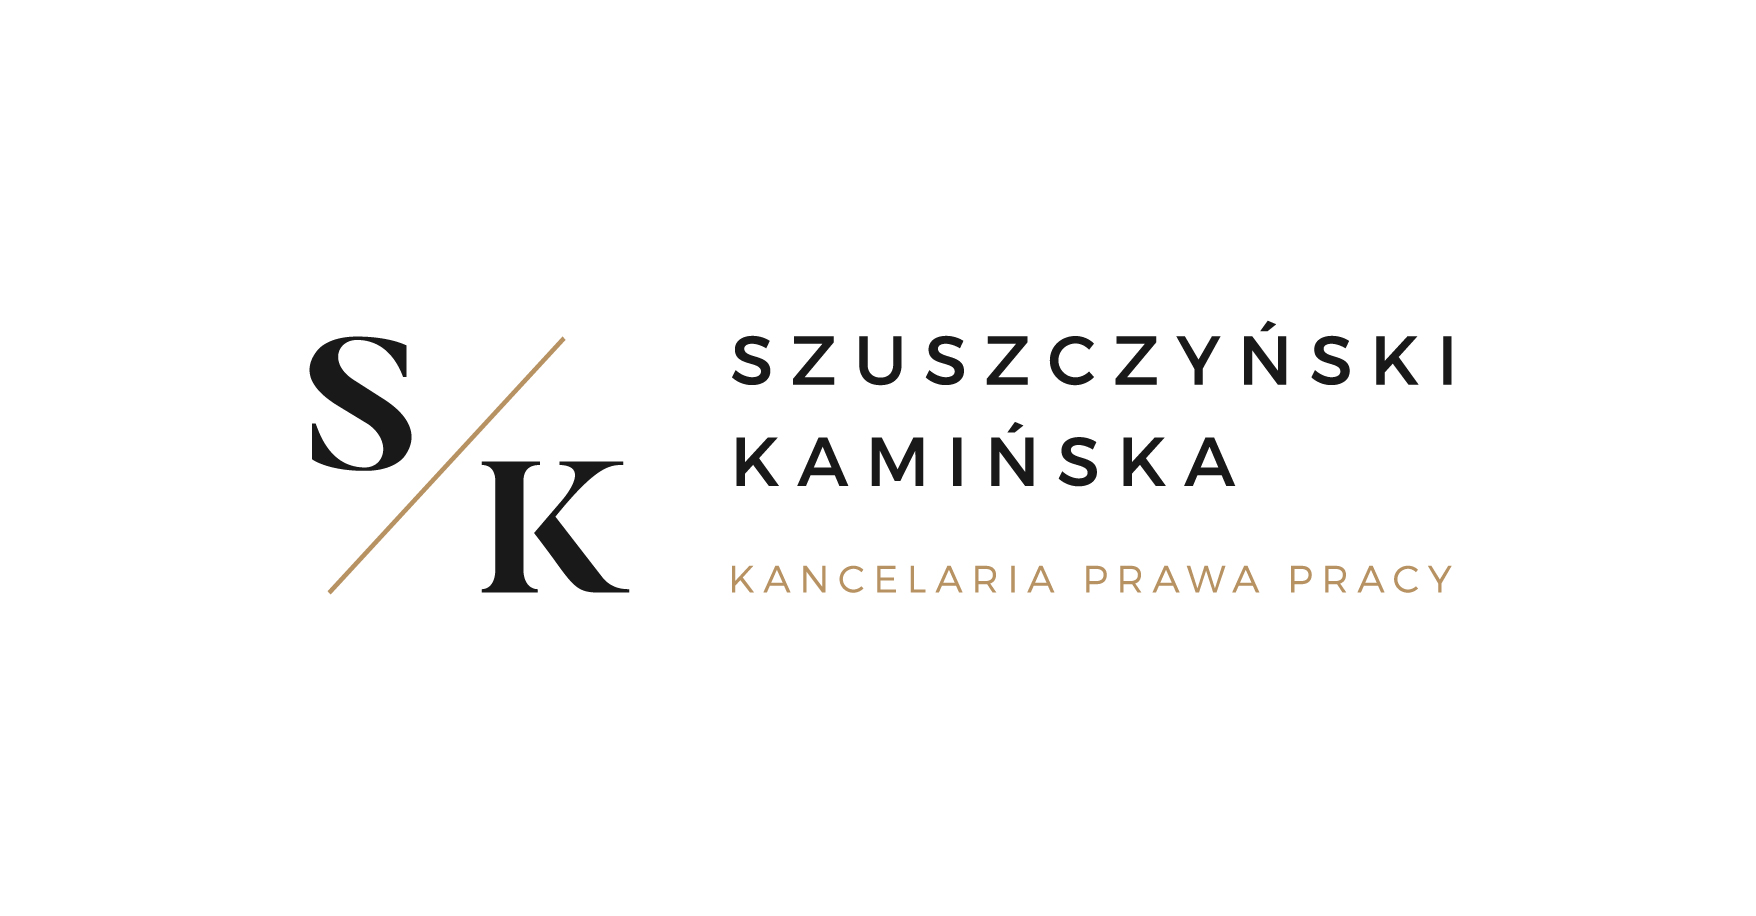 Szuszczyński Kamińska Kancelaria Prawa Pracy